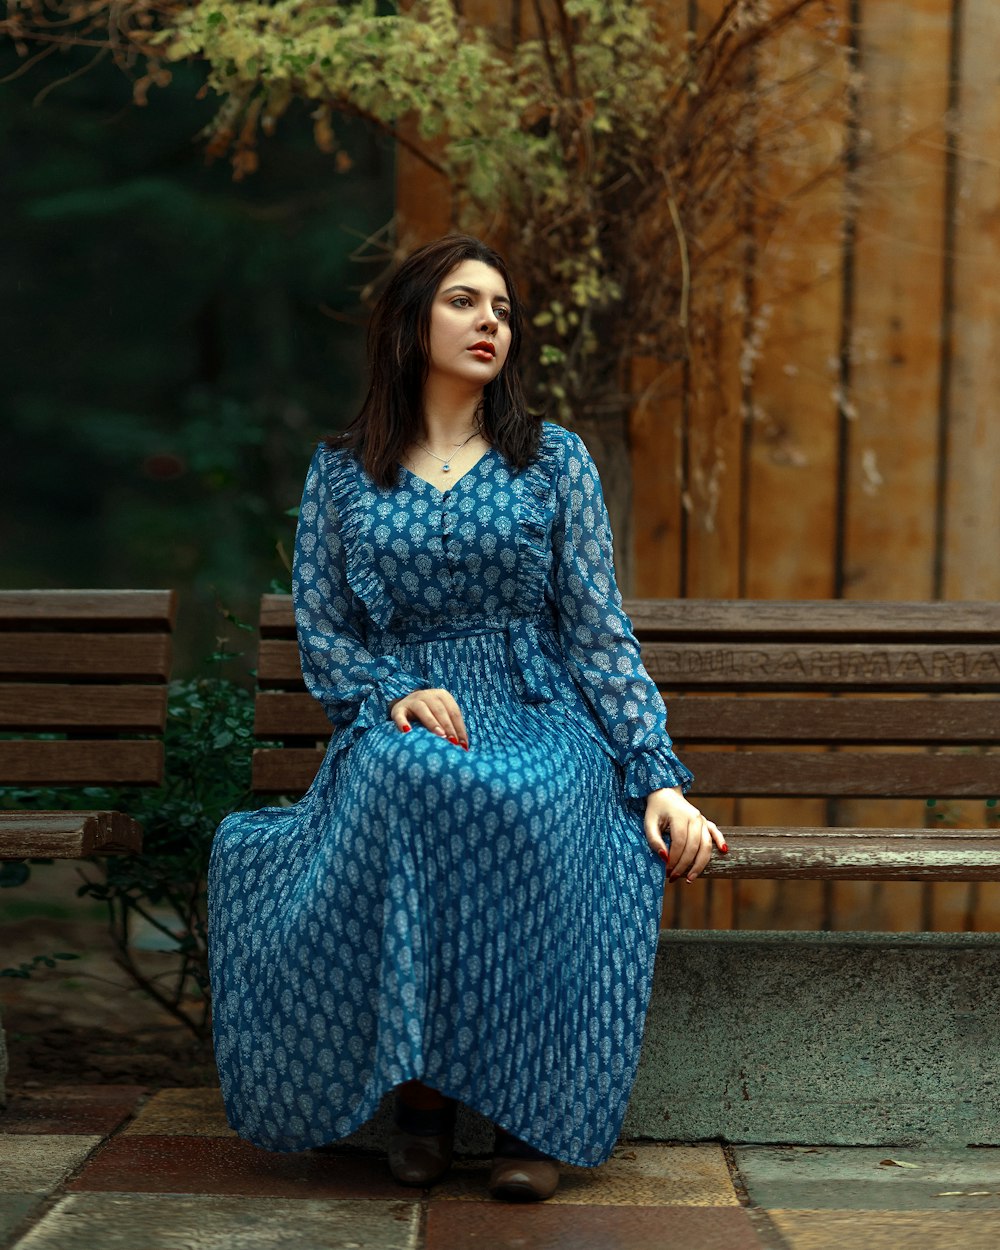 ベンチに座っている青いドレスを着た女性